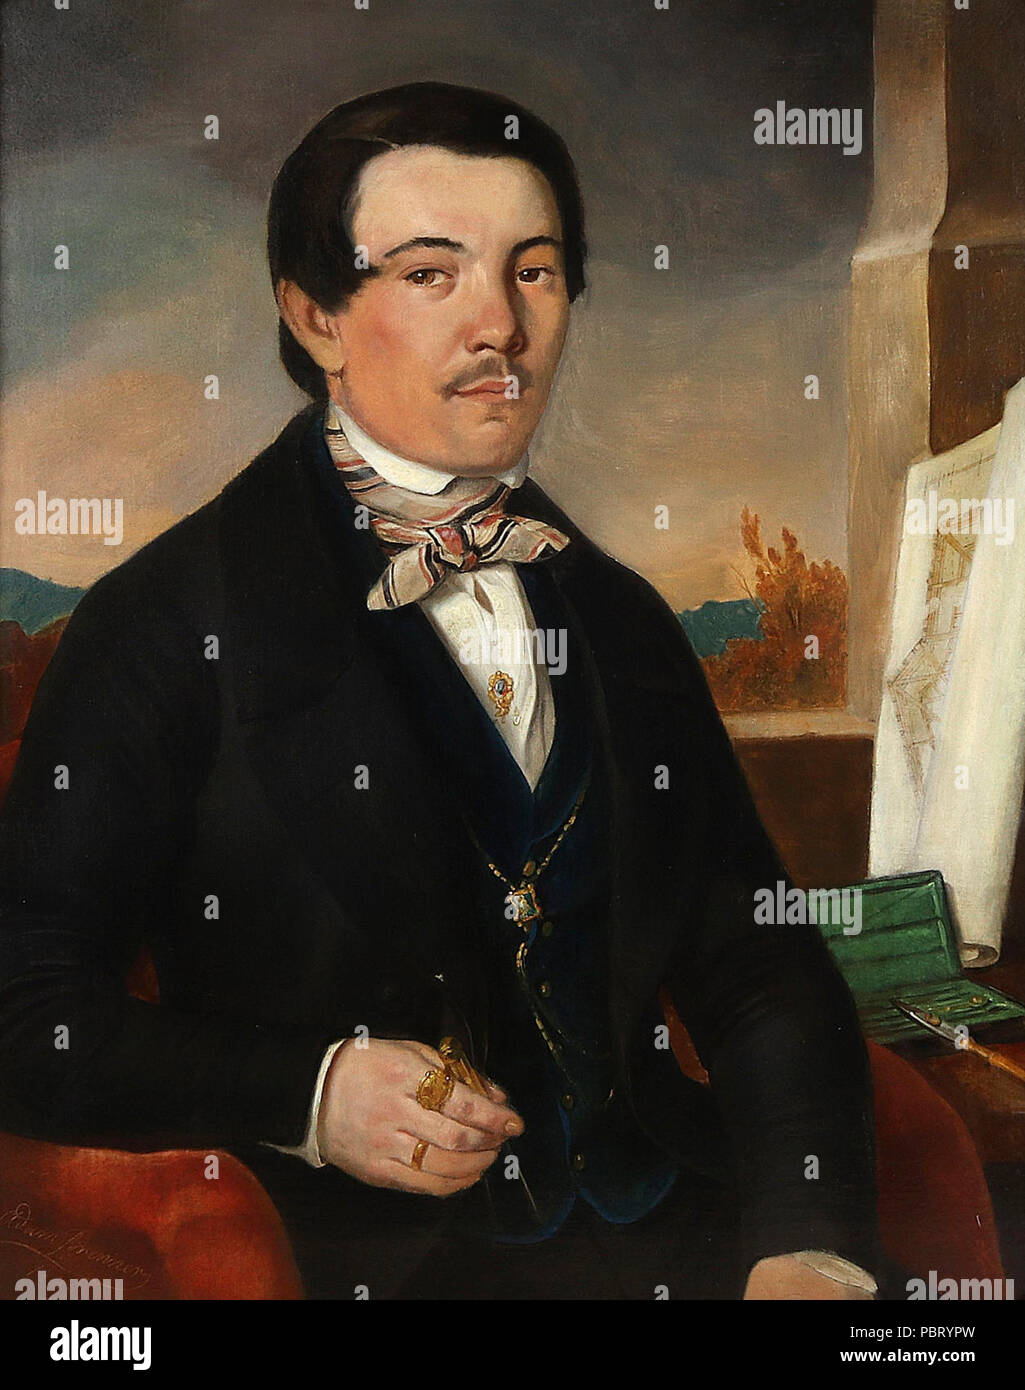 Adam Brenner Porträt eines Architekten 1849. Foto Stock